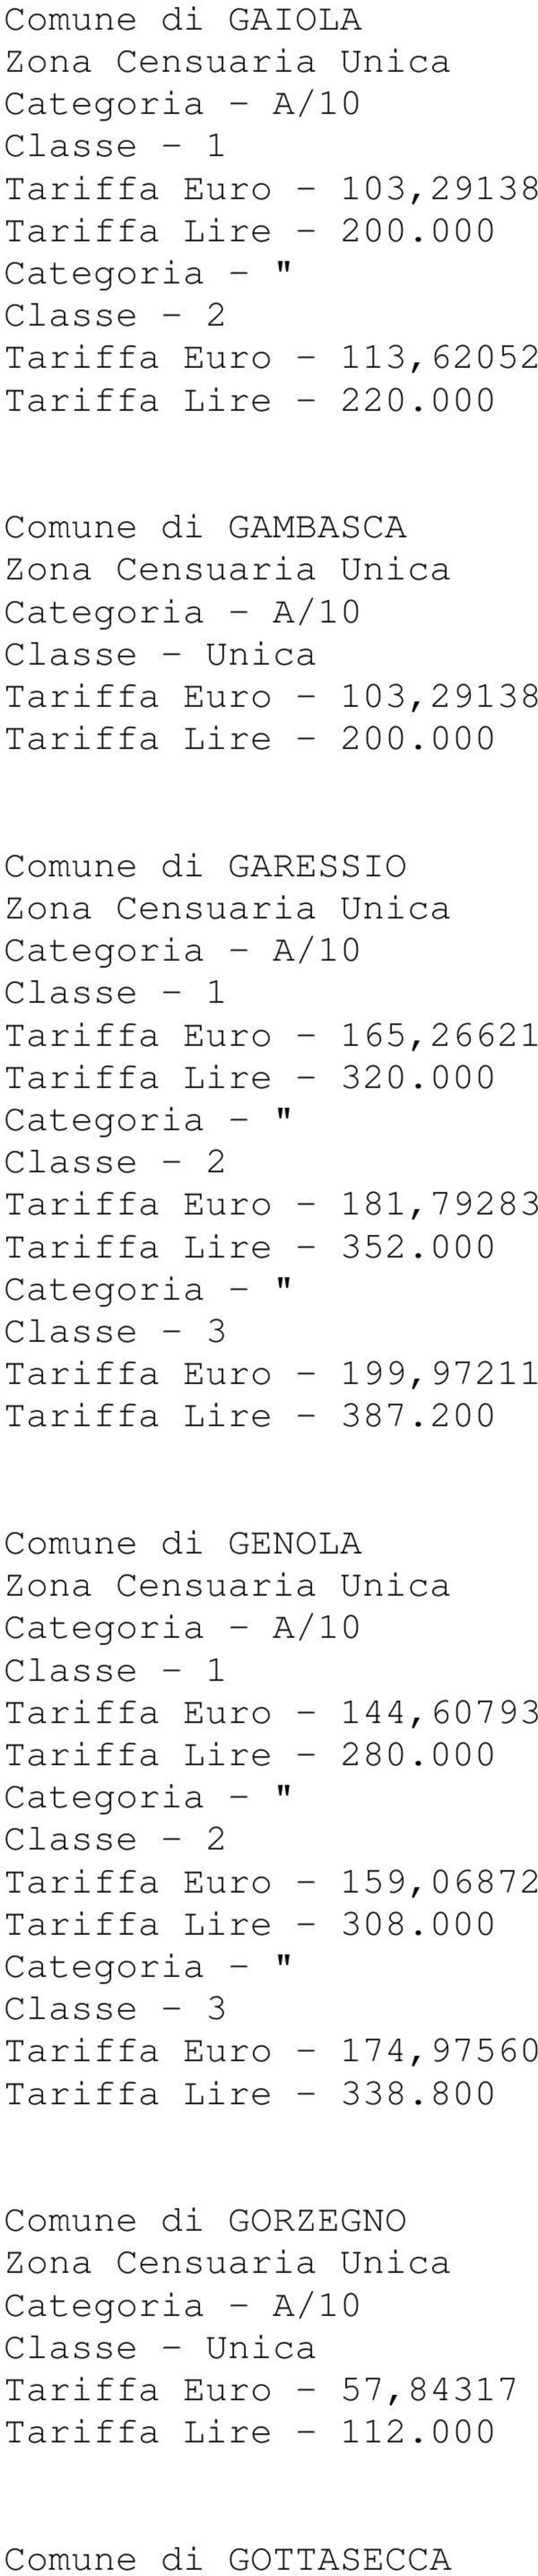 000 Tariffa Euro - 181,79283 Tariffa Lire - 352.000 Tariffa Euro - 199,97211 Tariffa Lire - 387.